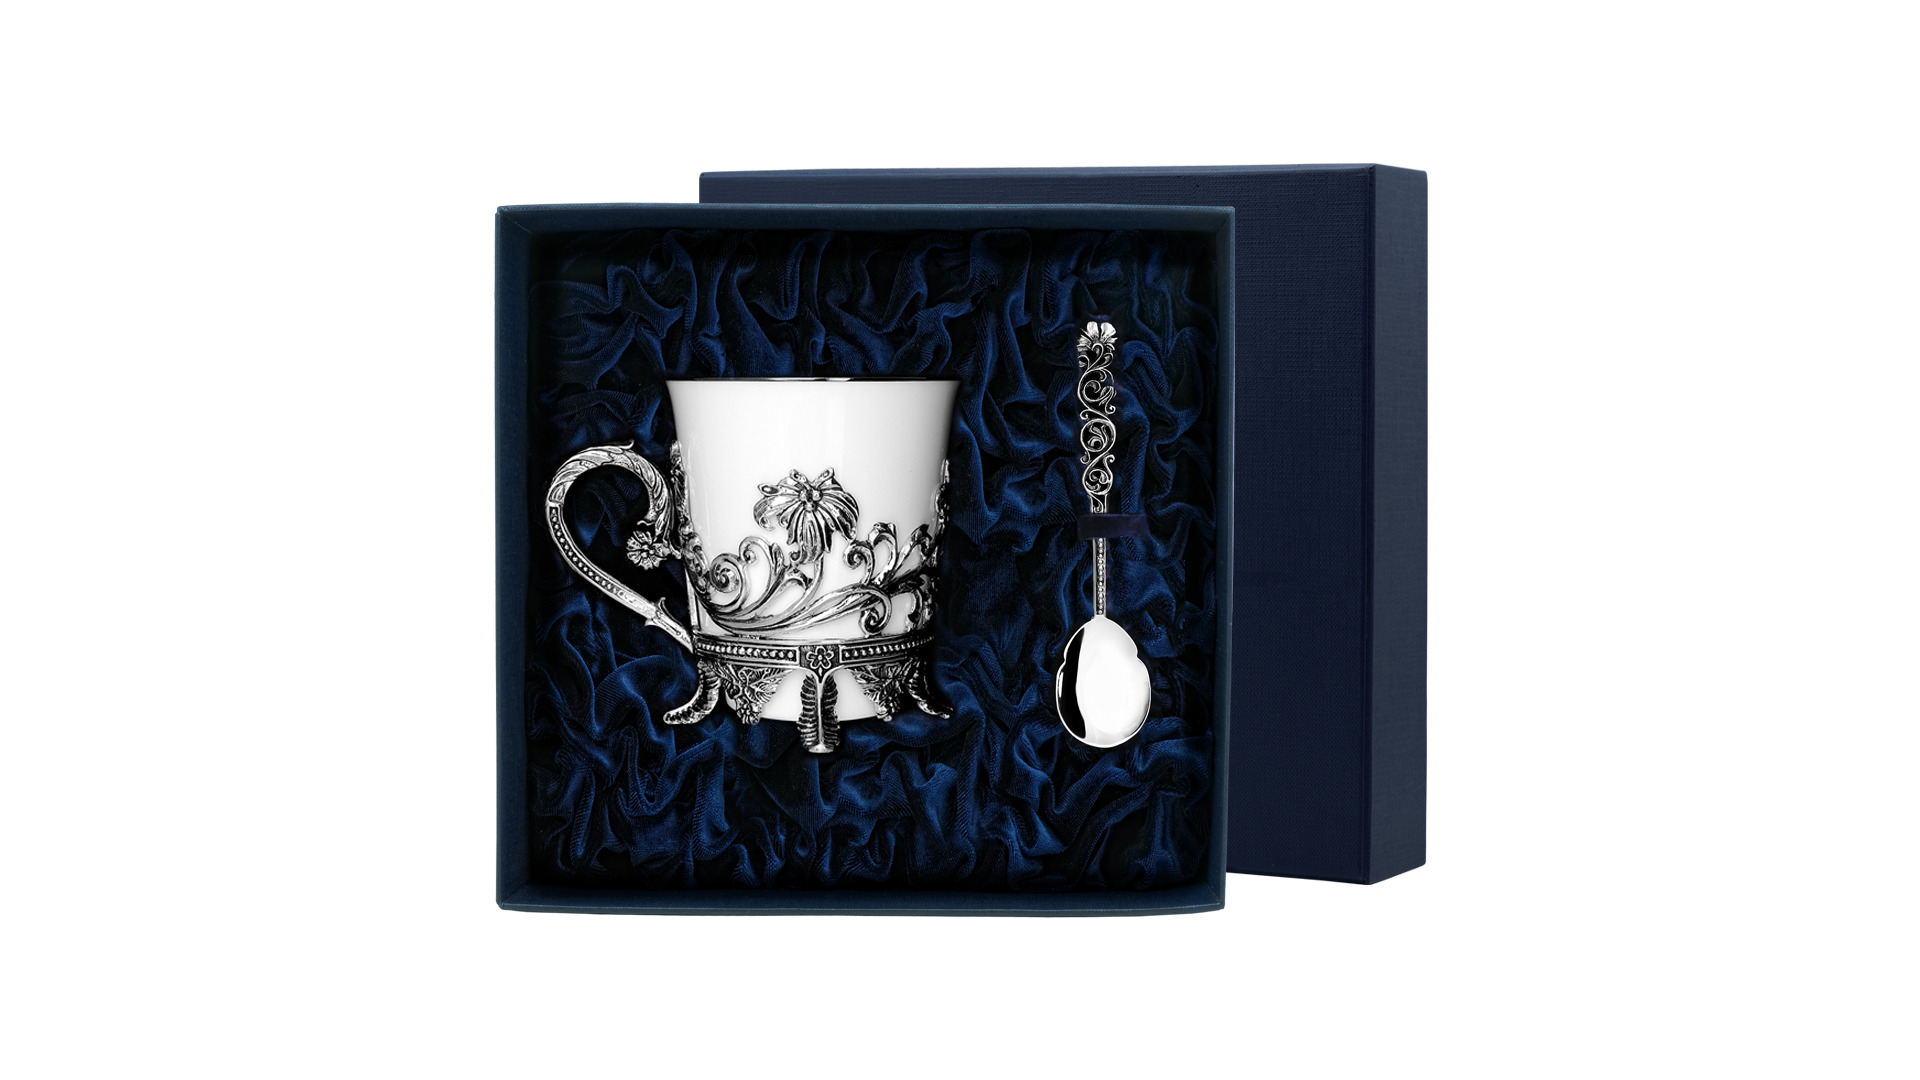 Чашка чайная с ложкой в футляре АргентА серебро 925 и Фарфор Цветочная 131,6 г, серебро 925